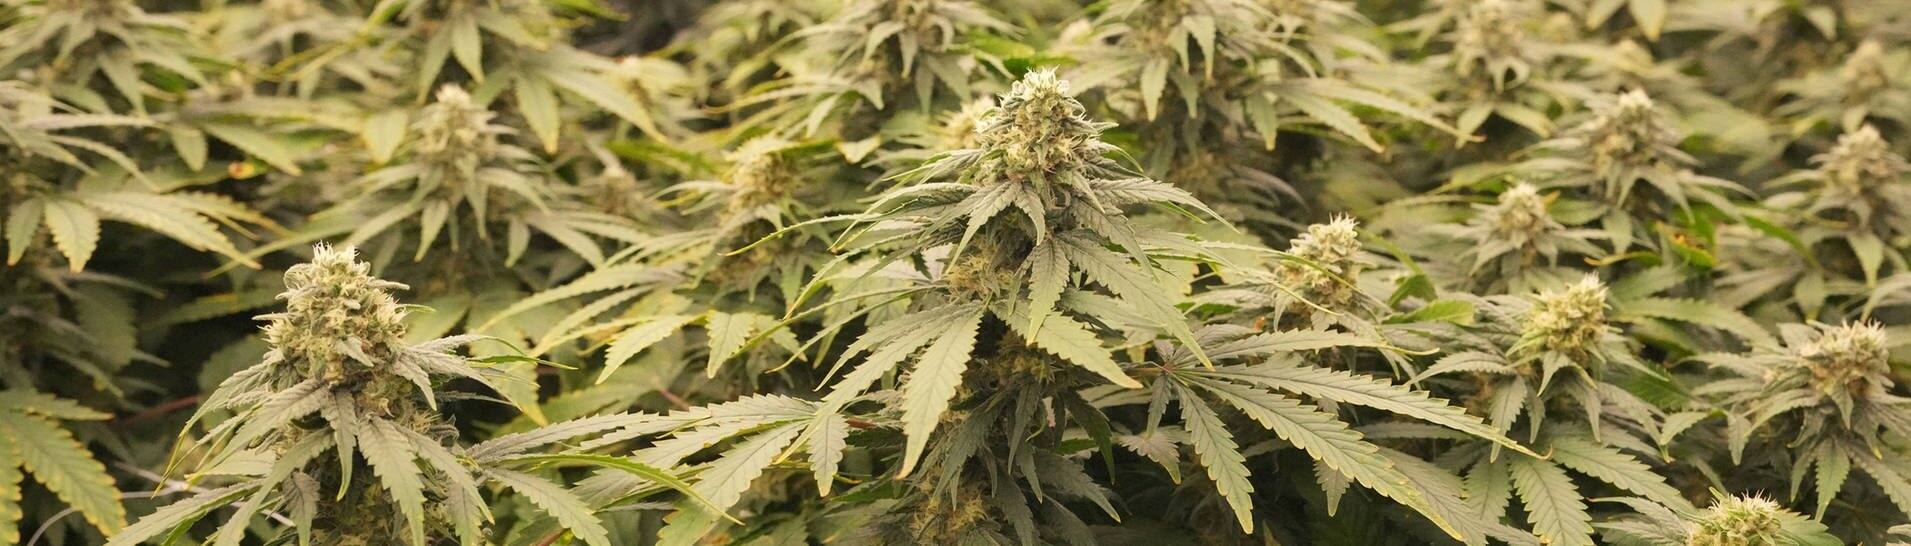 Cannabis-Pflanzen in einem Gewächshaus (Foto: IMAGO, IMAGO/UPI Photo)